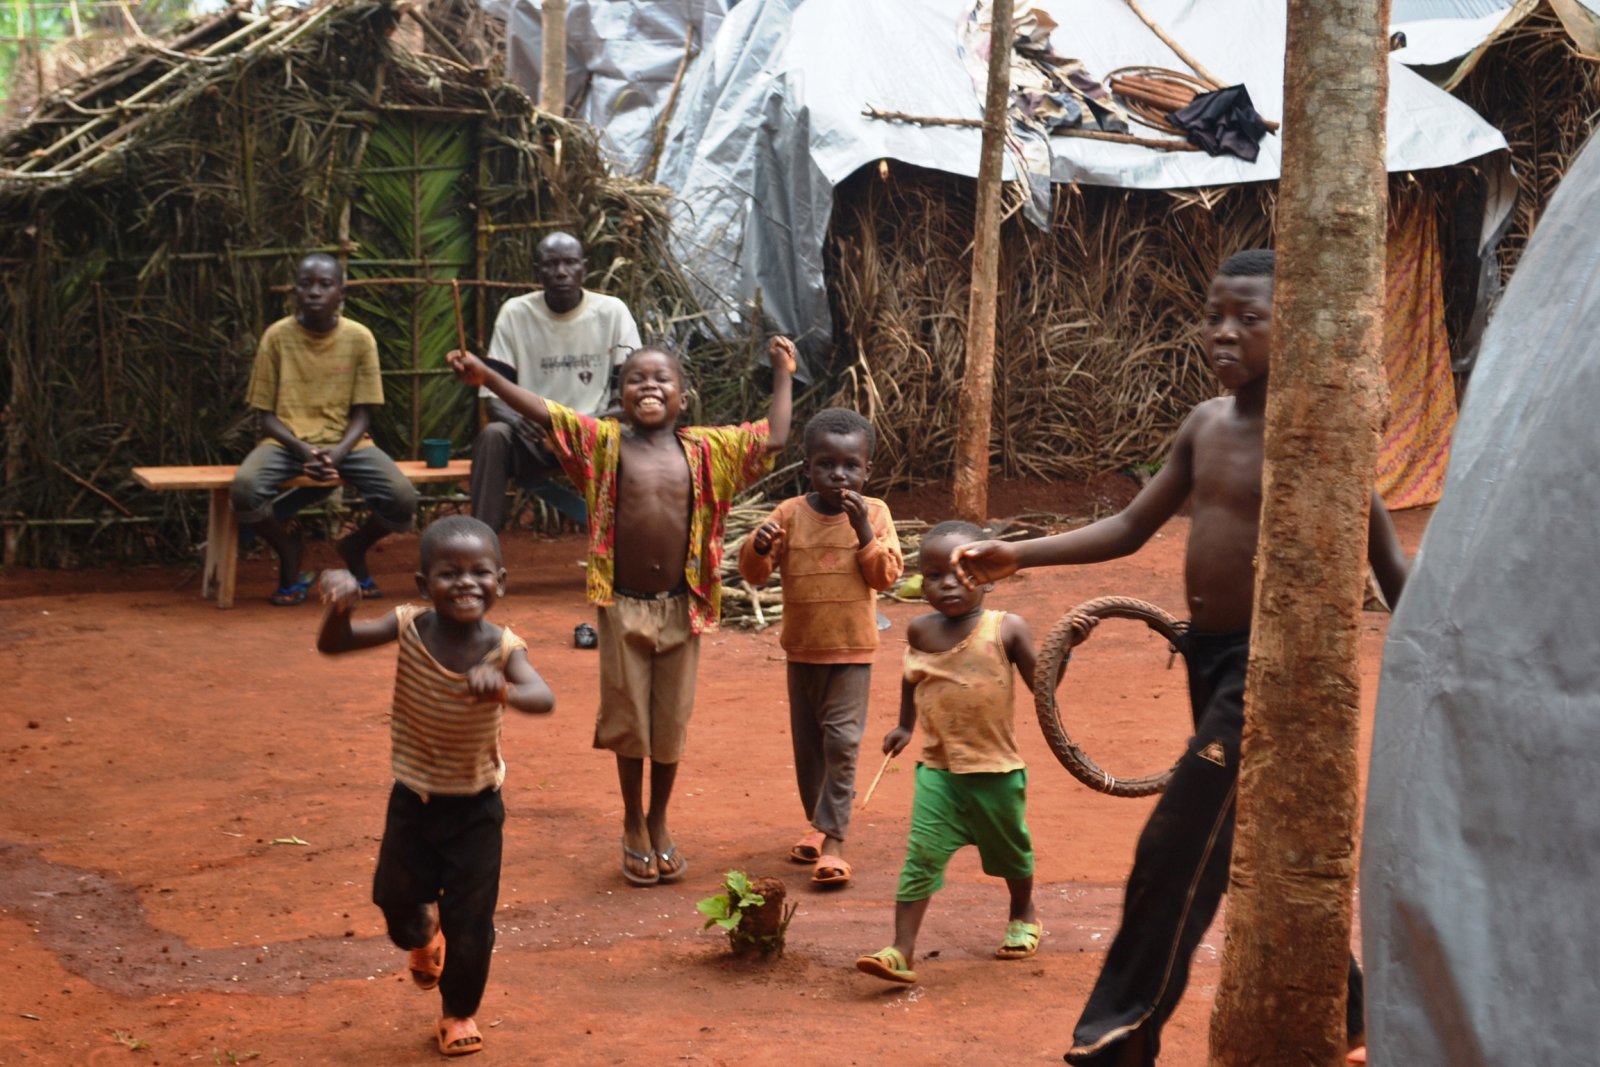 Children-at-the-carmelitanes-site-bangui-2-Copia